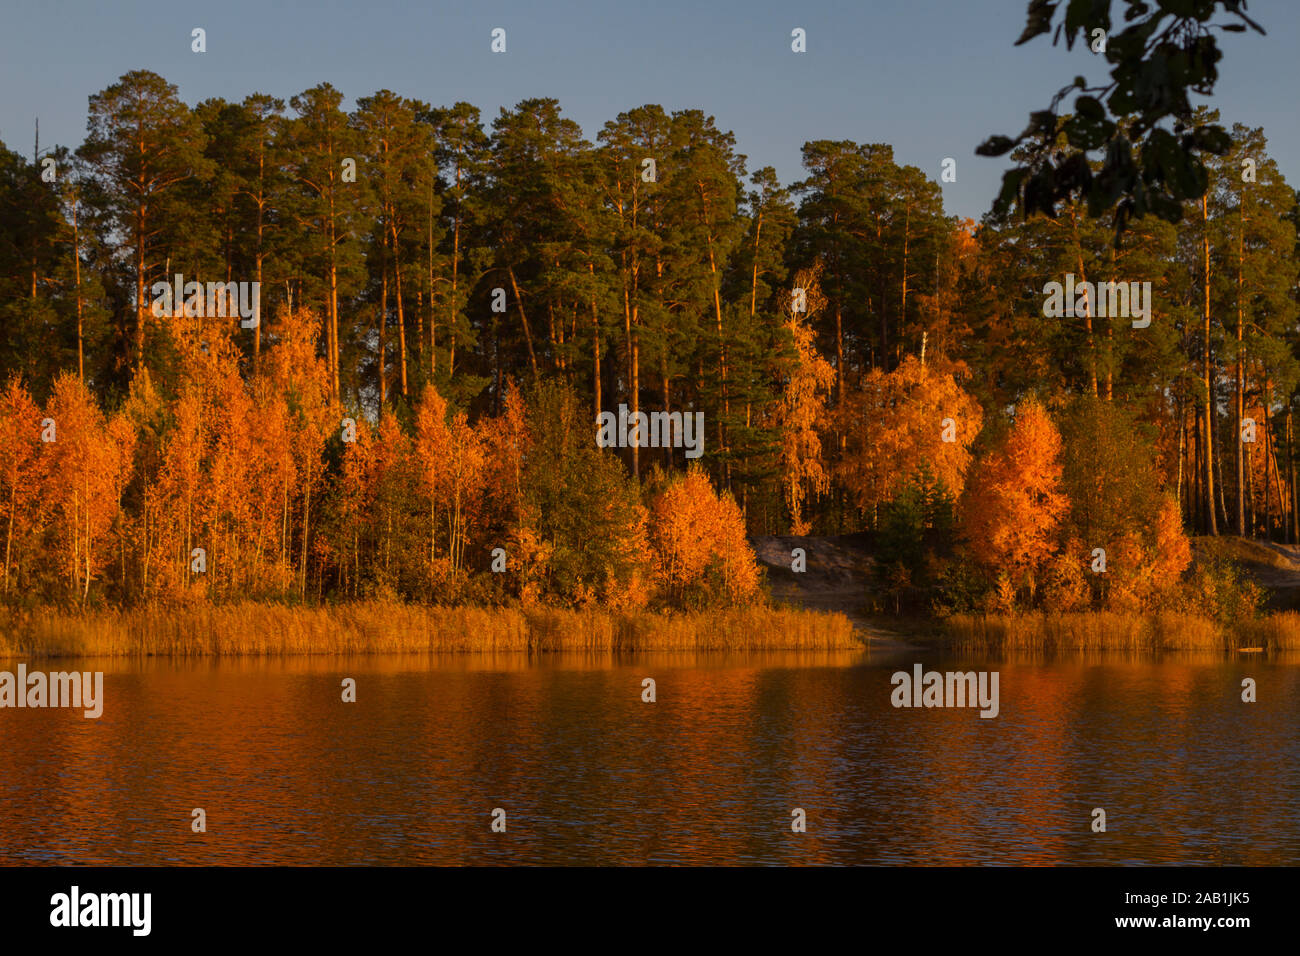 Die Befriedung Landschaft Herbst Wald am Ufer des Sees in den Strahlen der untergehenden Sonne. Orange gelb leuchtenden Farben. Stockfoto